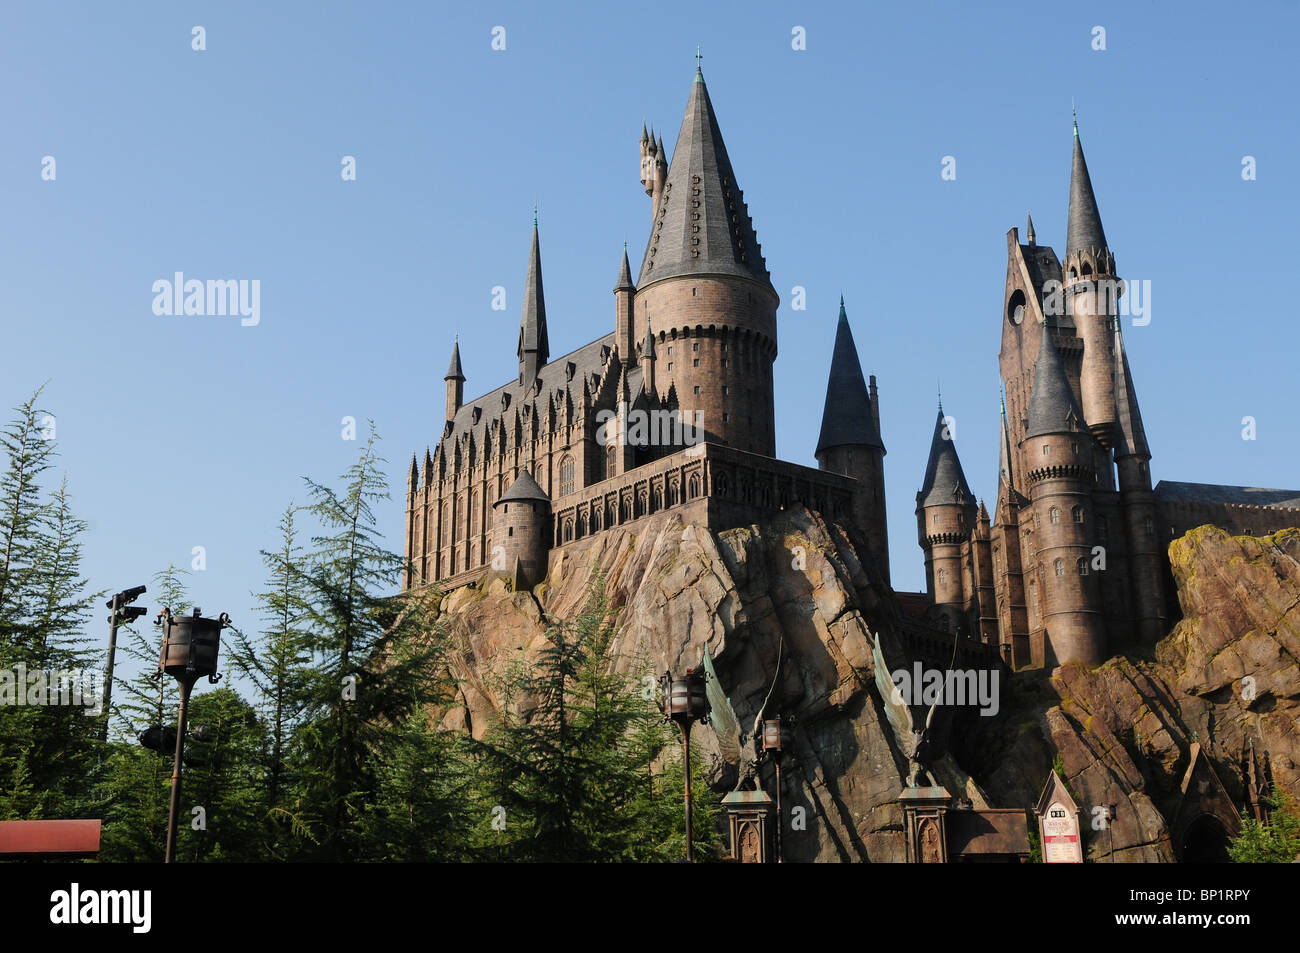 Le Château de Poudlard, dans le monde magique de Harry Potter, de Islands of Adventure, Universal Orlando Resort, Orlando, Floride, USA Banque D'Images